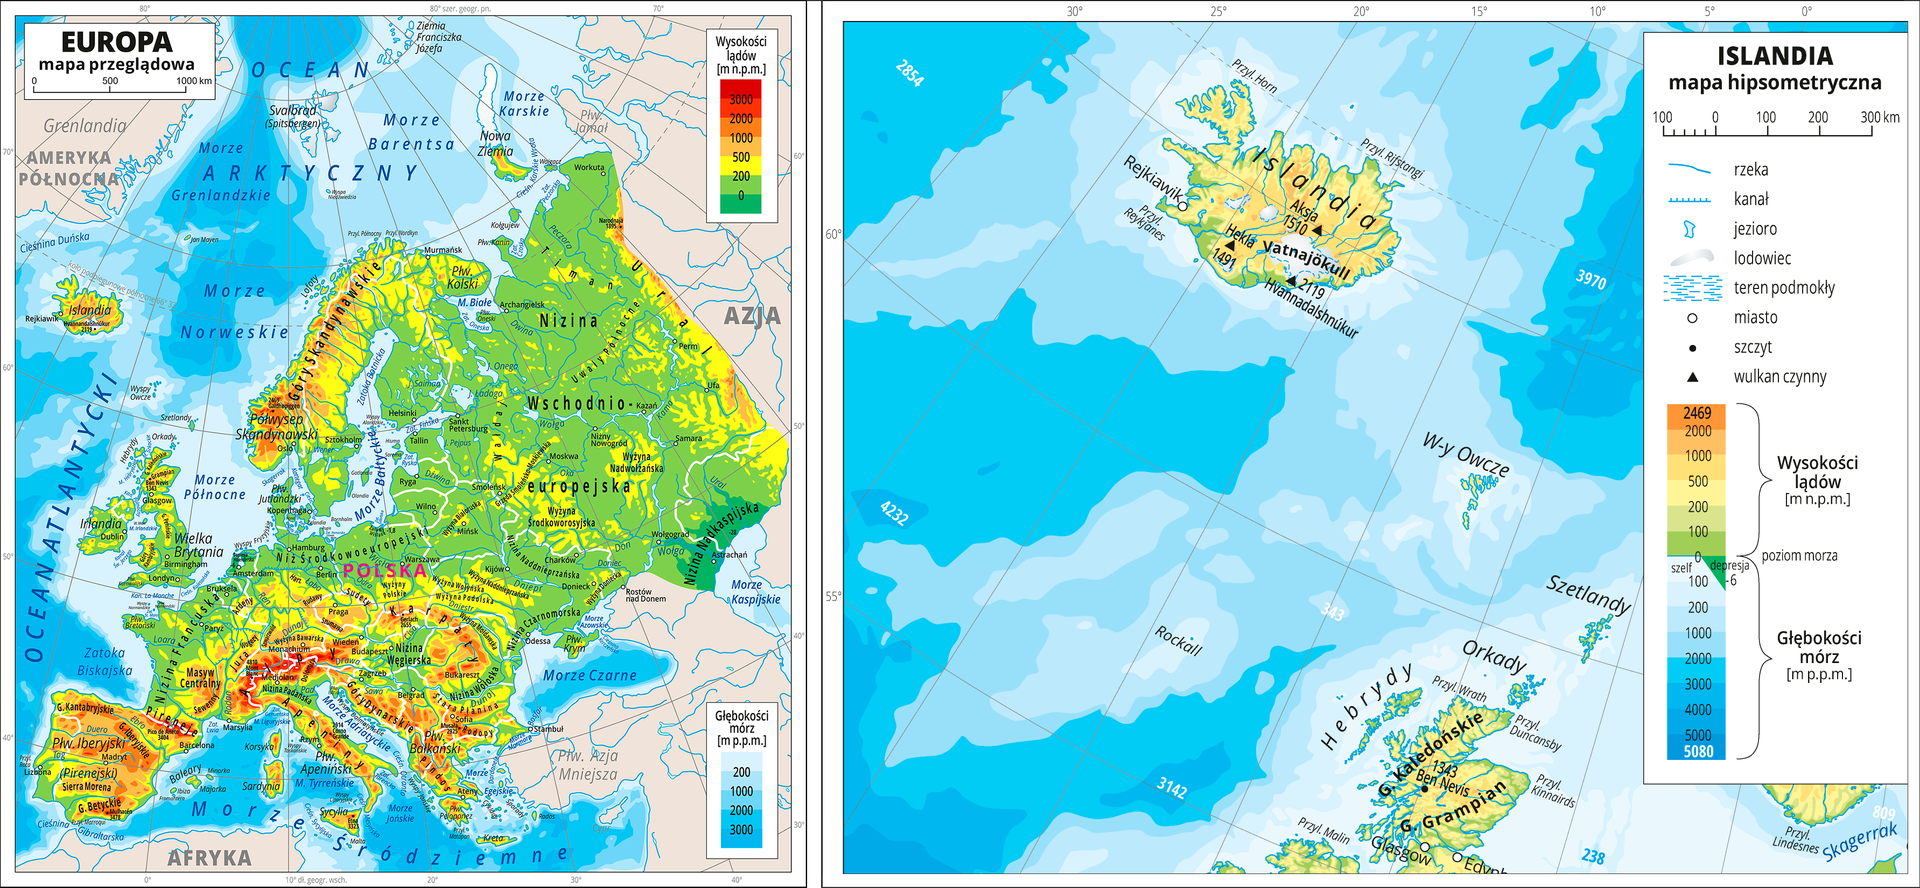 Dwie mapy obok siebie ukazują położenie Islandii, na mapie po lewej stronie pokazano Europę oraz oraz Islandię umiejscowioną po północno – wschodniej stronie Europy na Oceanie Atlantyckim. Obok mapa ukazuje samą Islandię na Oceanie Atlantyckim. Na obu mapach zastosowano skalę barw dla ukazania wysokości. Kolor zielony oznacza niziny, żółty -wyżyny, a czerwony - góry. Kolorem niebieskim zaznaczono morza i oceany. Białe plamy na terenie Islandii to lodowce.